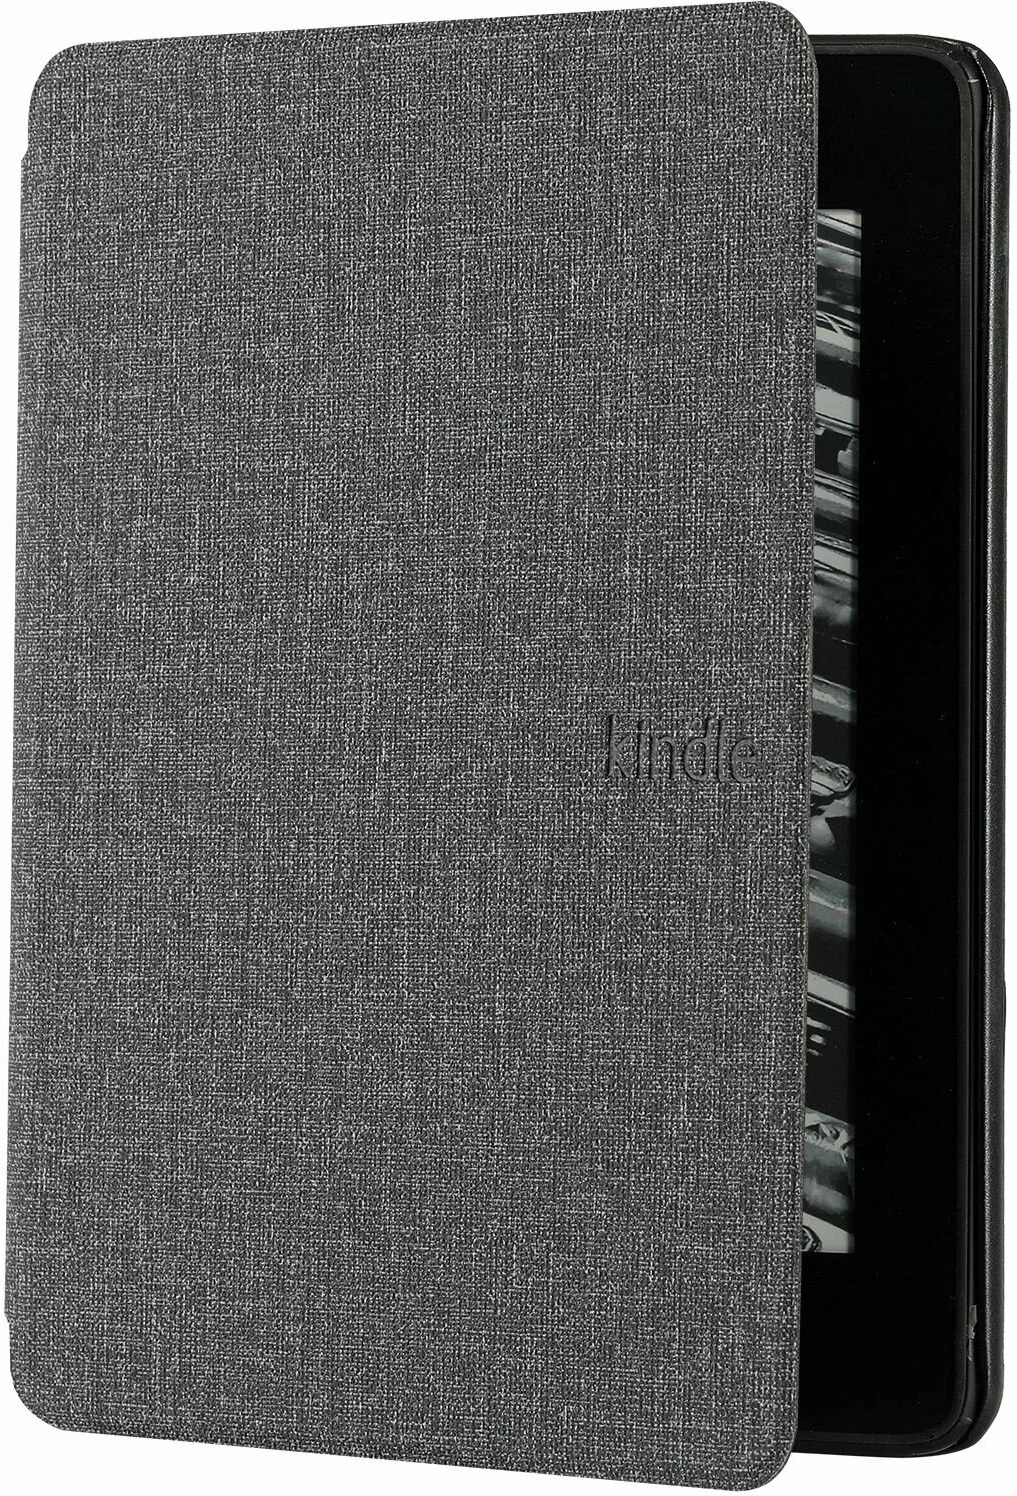 Чехол M-Case для Amazon Kindle Paperwhite 2021 цвет антрацит